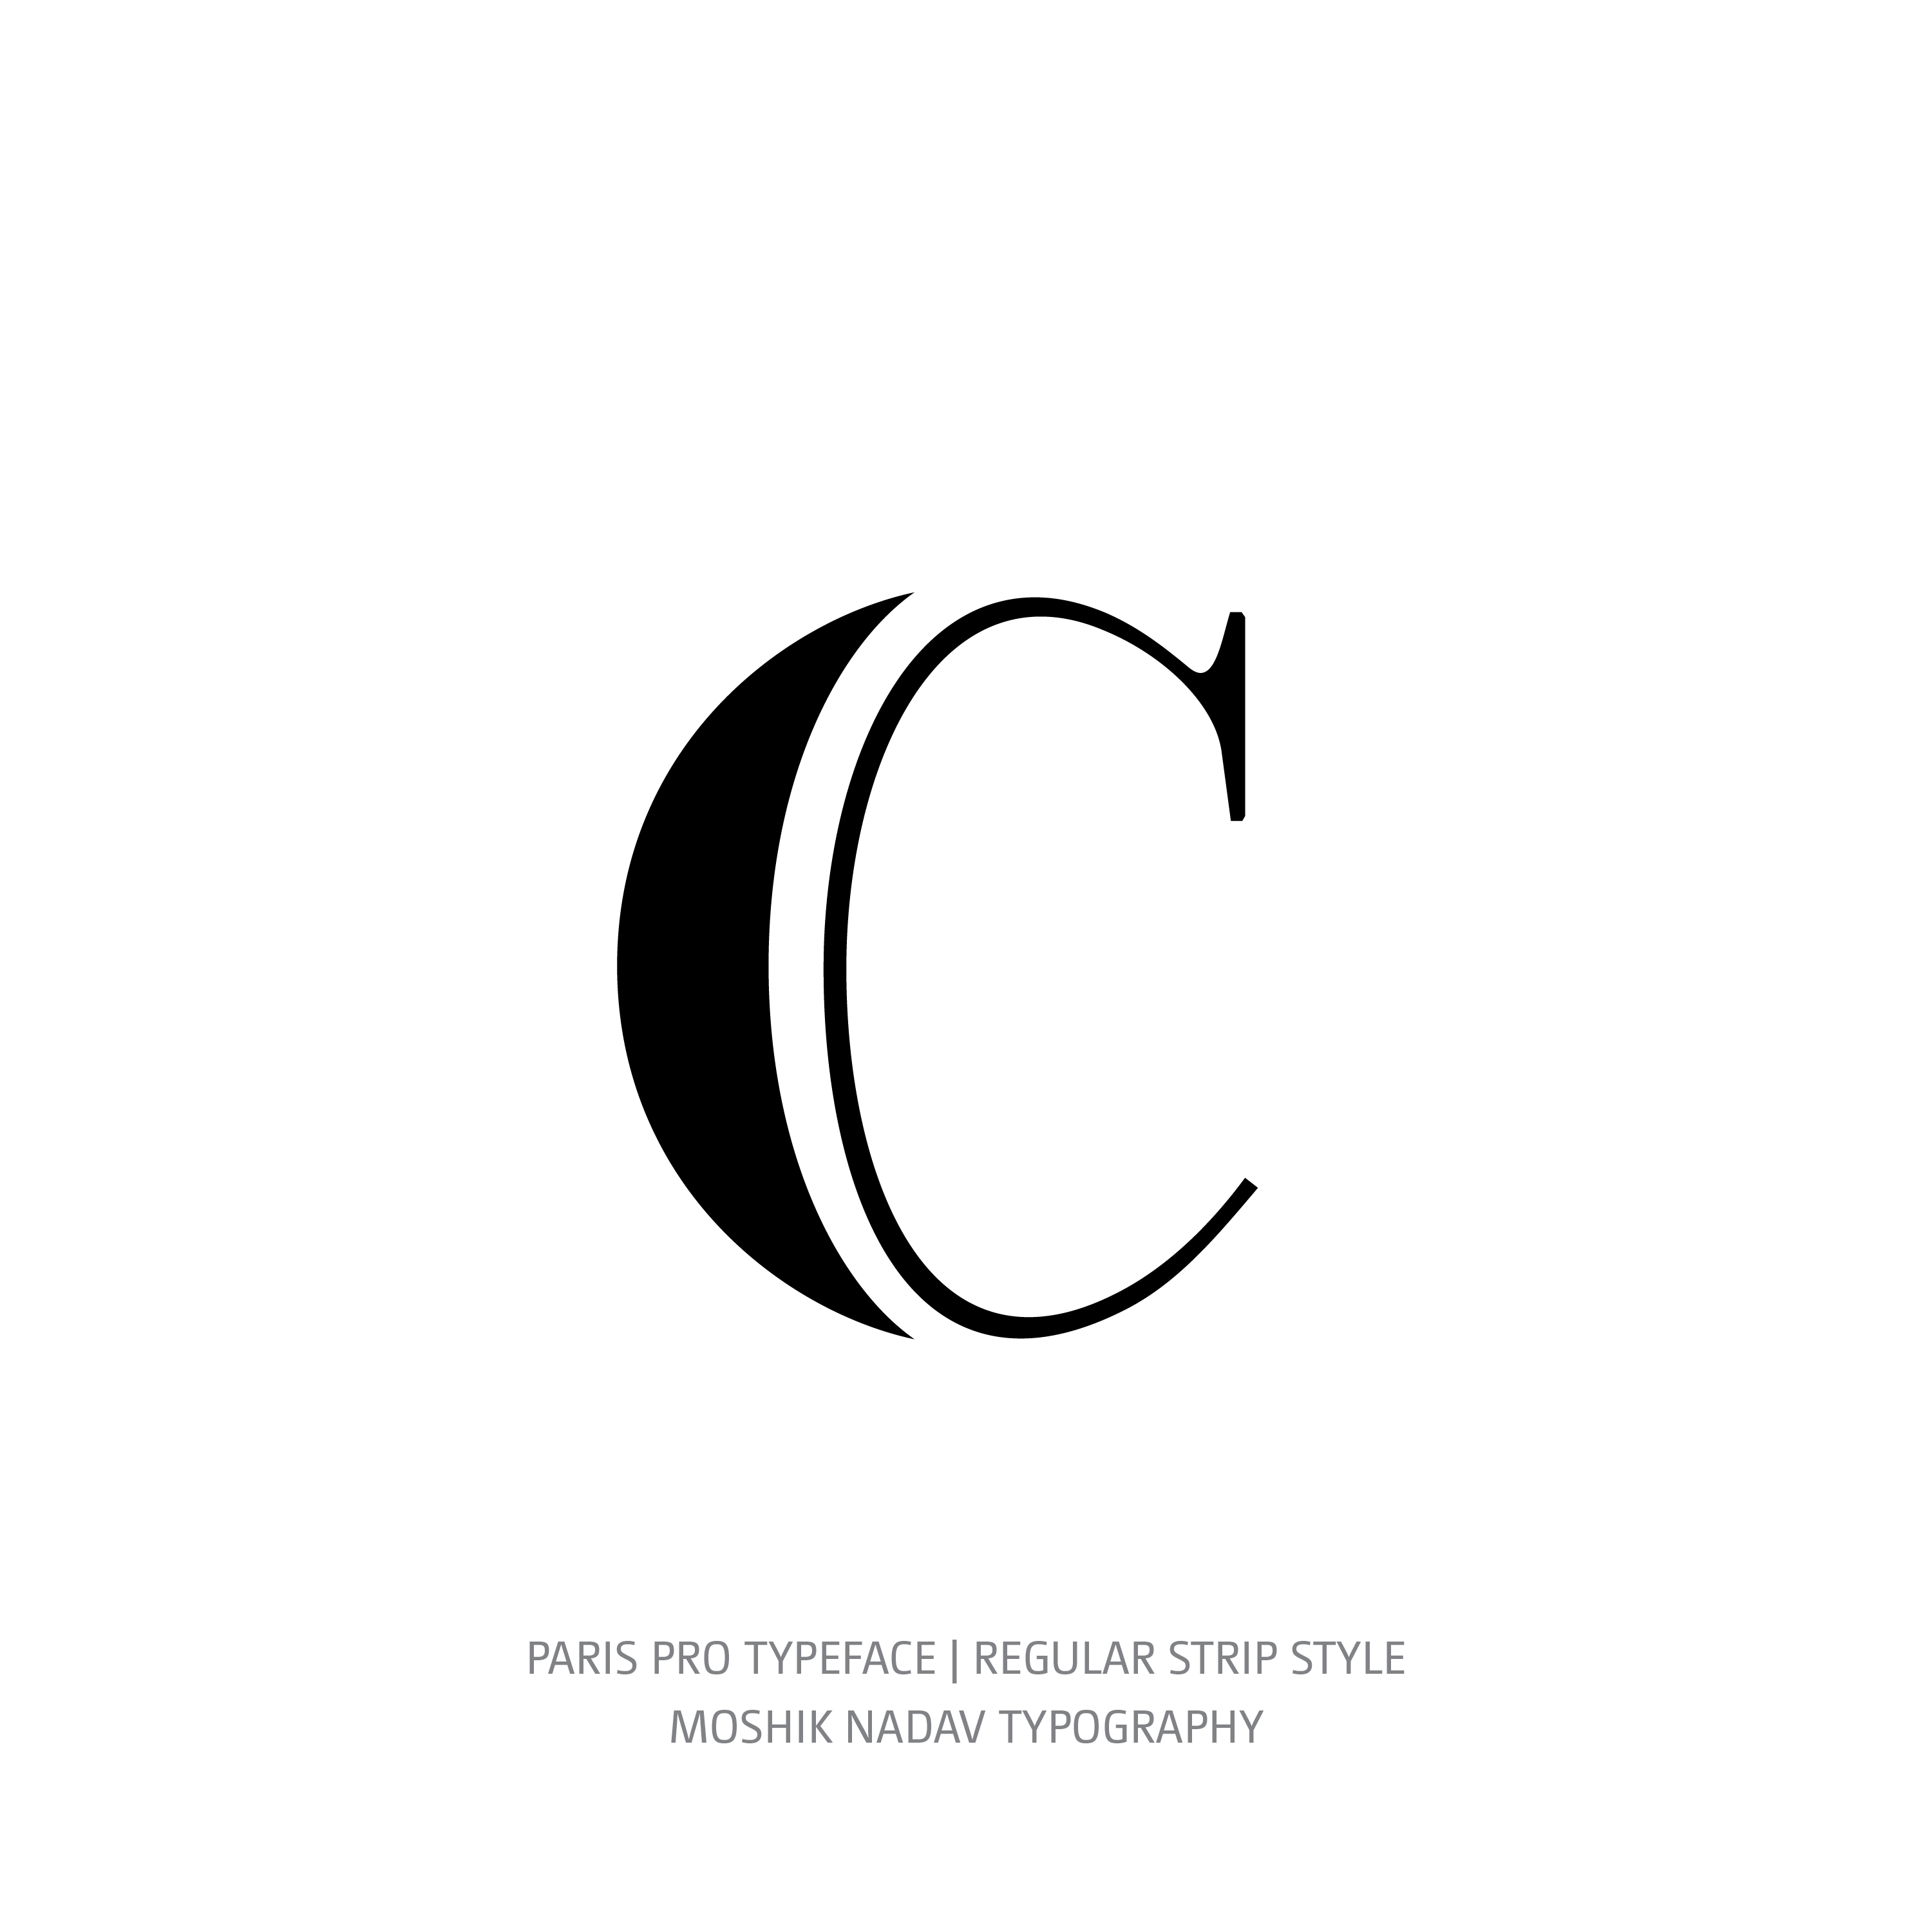 Paris Pro Typeface Regular Strip c